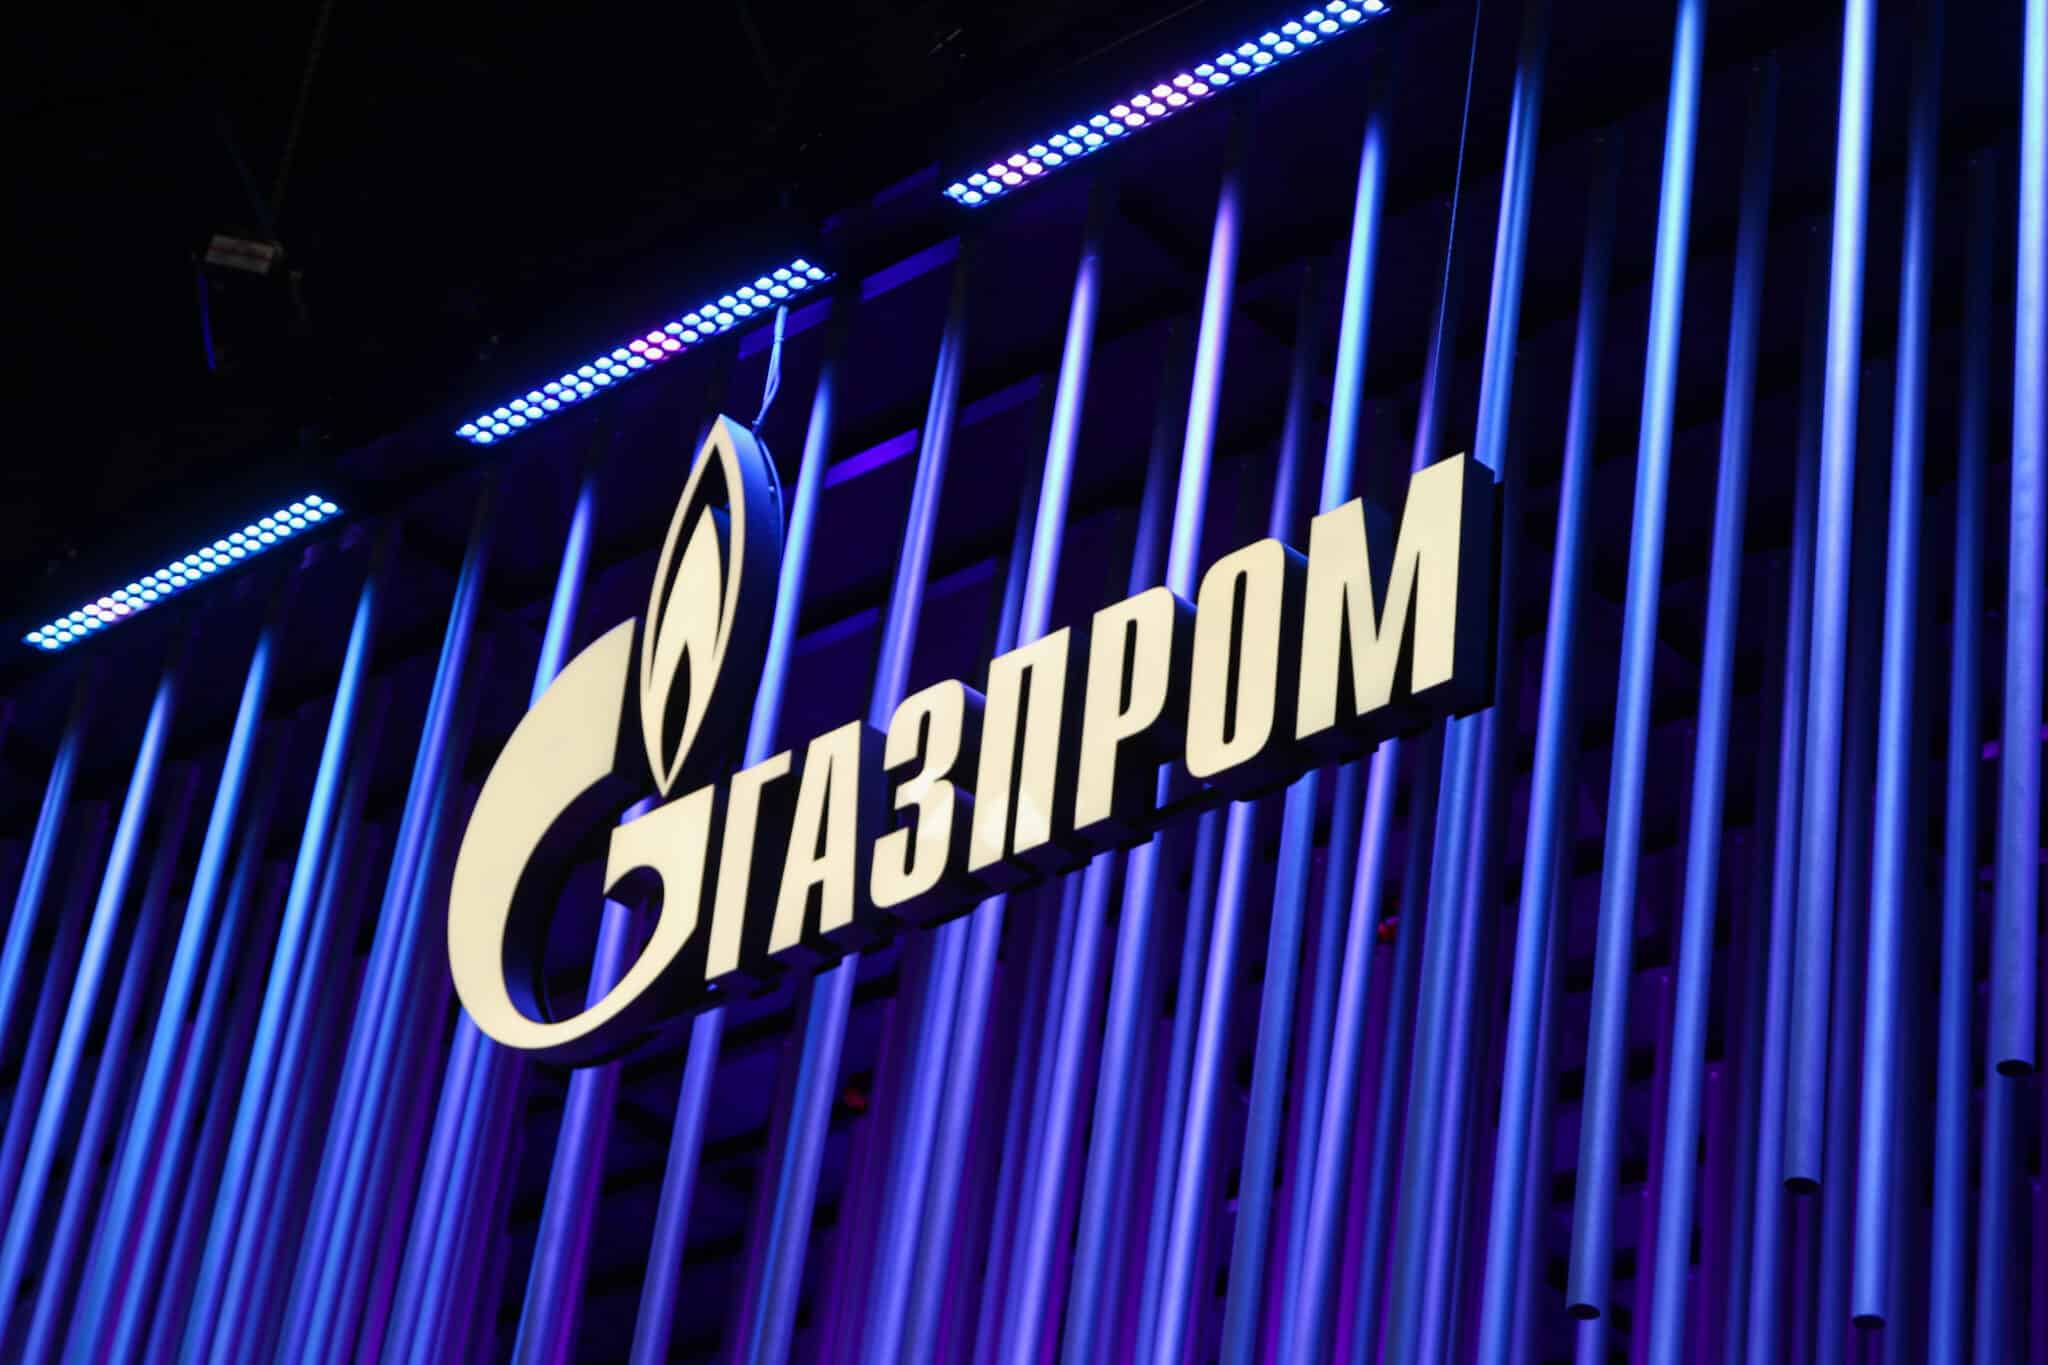 Vista general del logotipo del gigante energético ruso Gazprom Gazprom en el Foro Económico Internacional de San Petersburgo